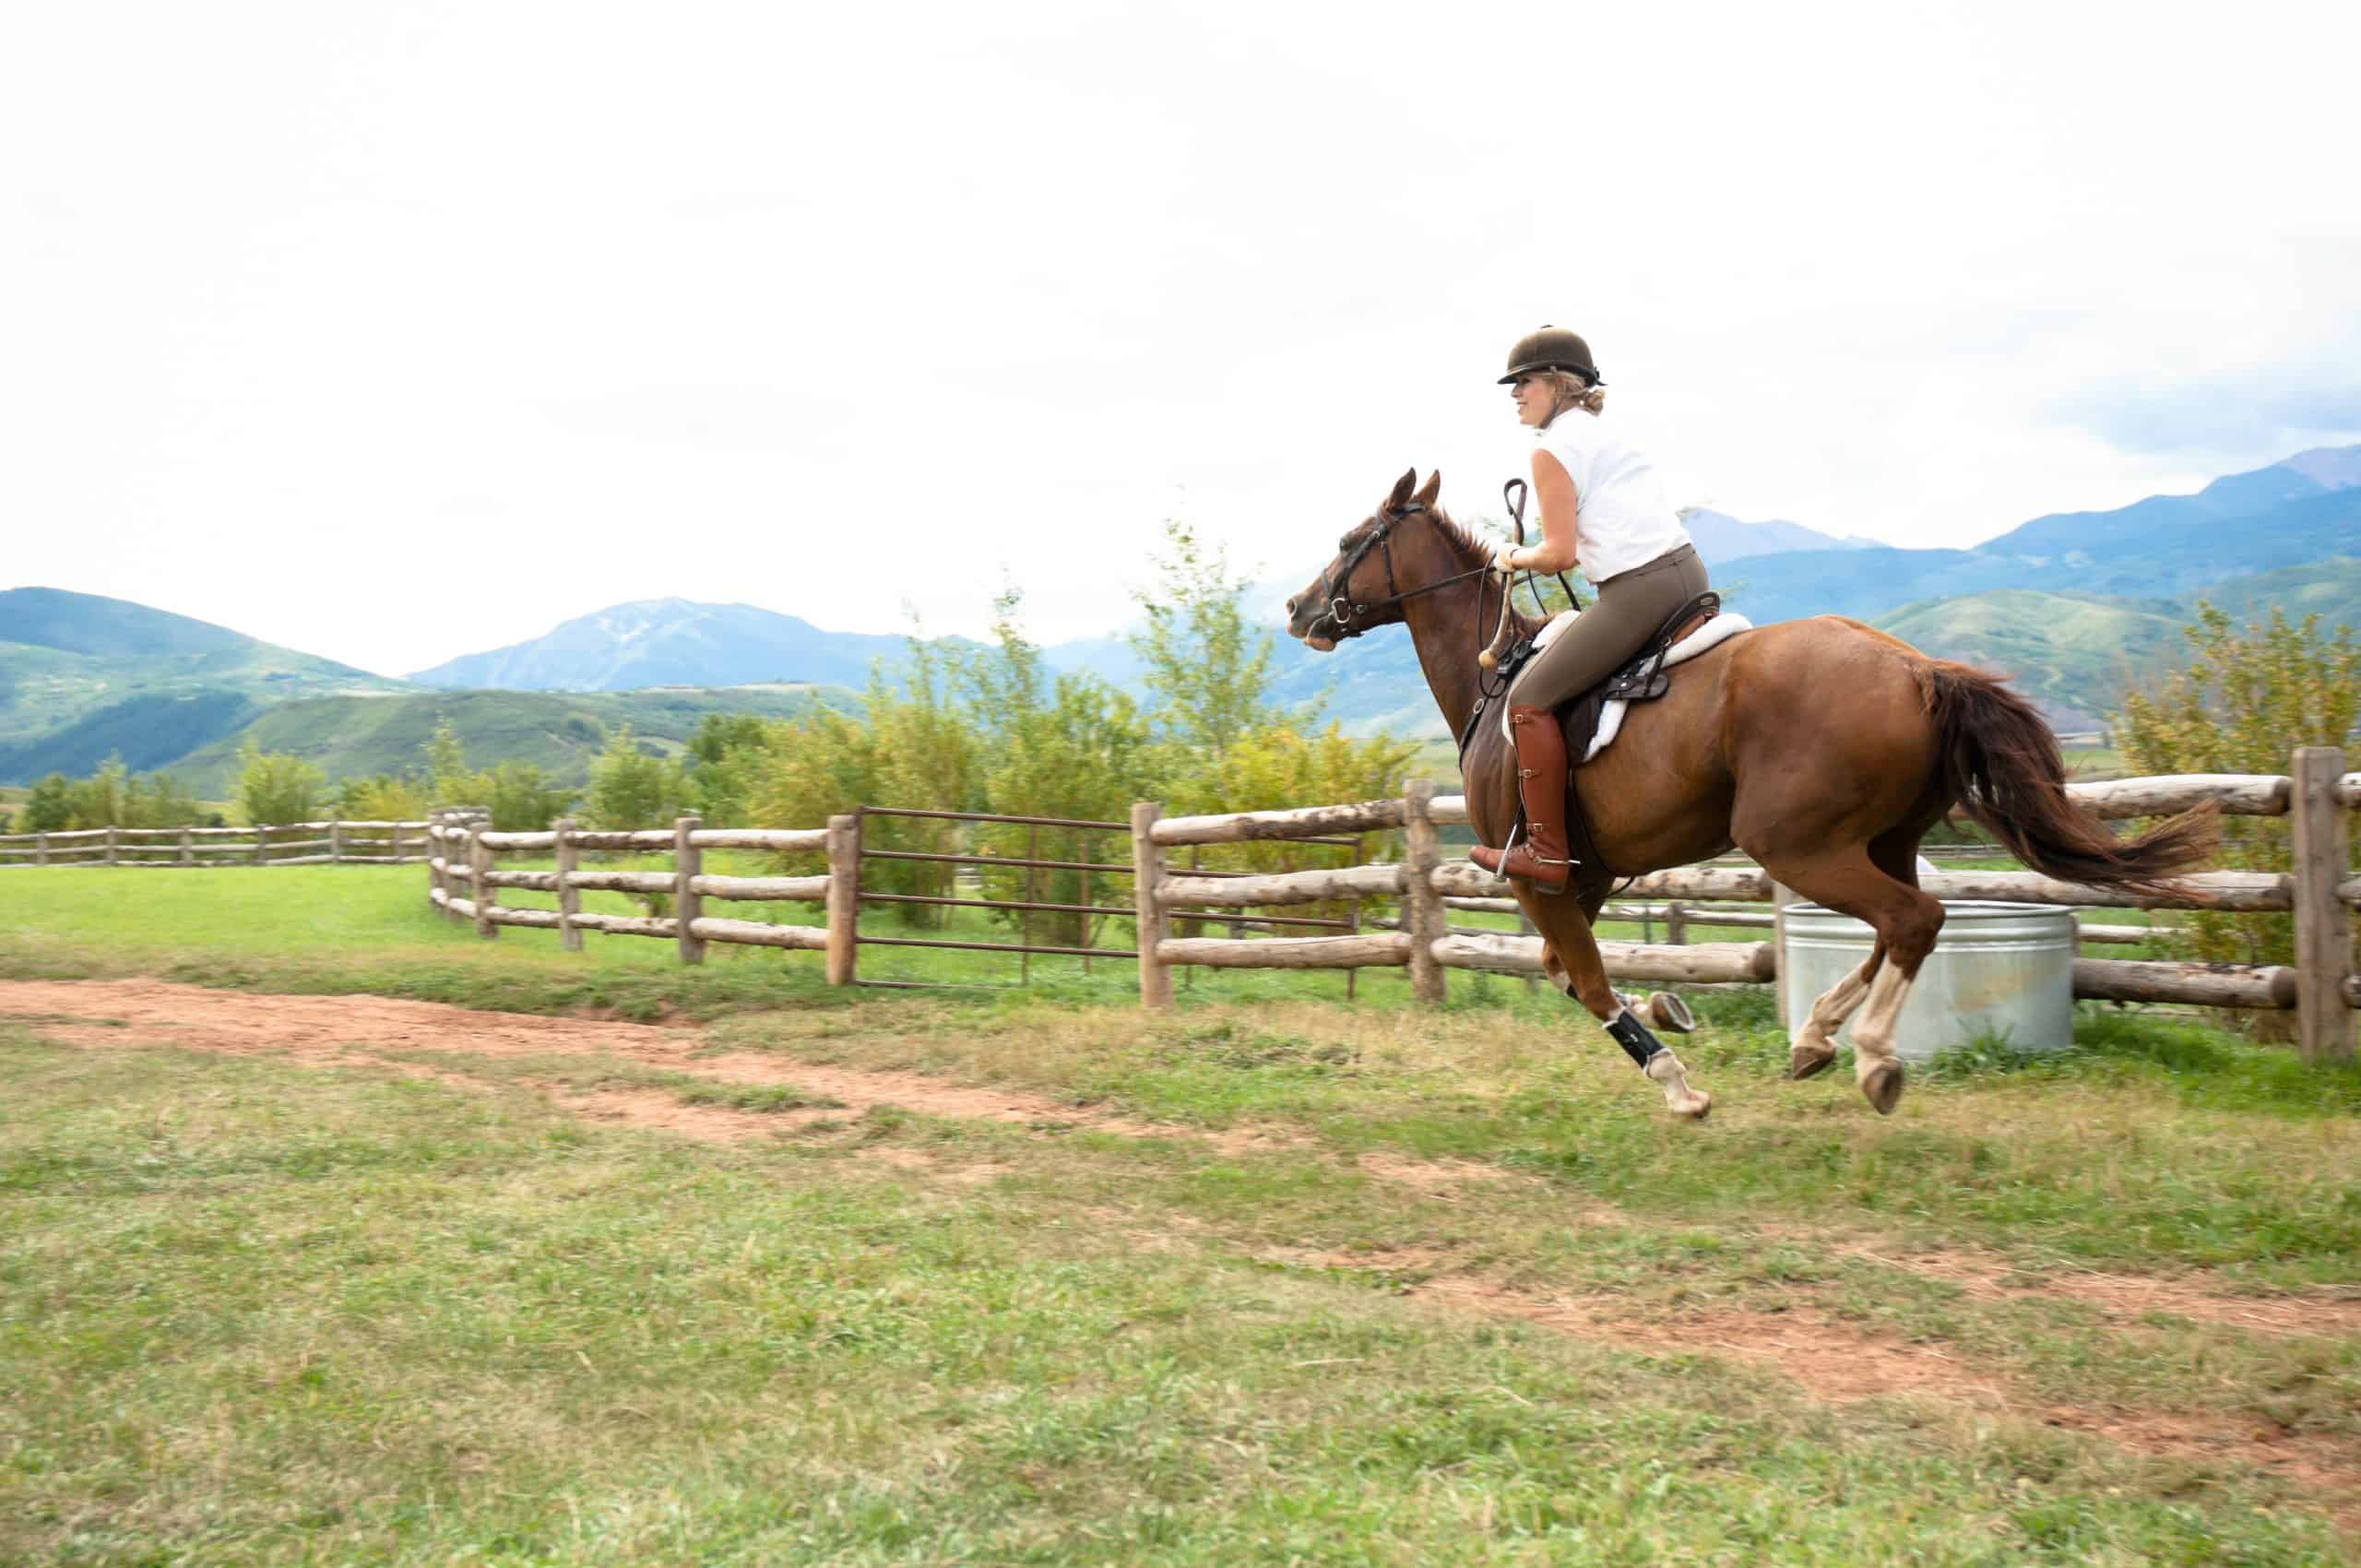 Horseback rider in a field